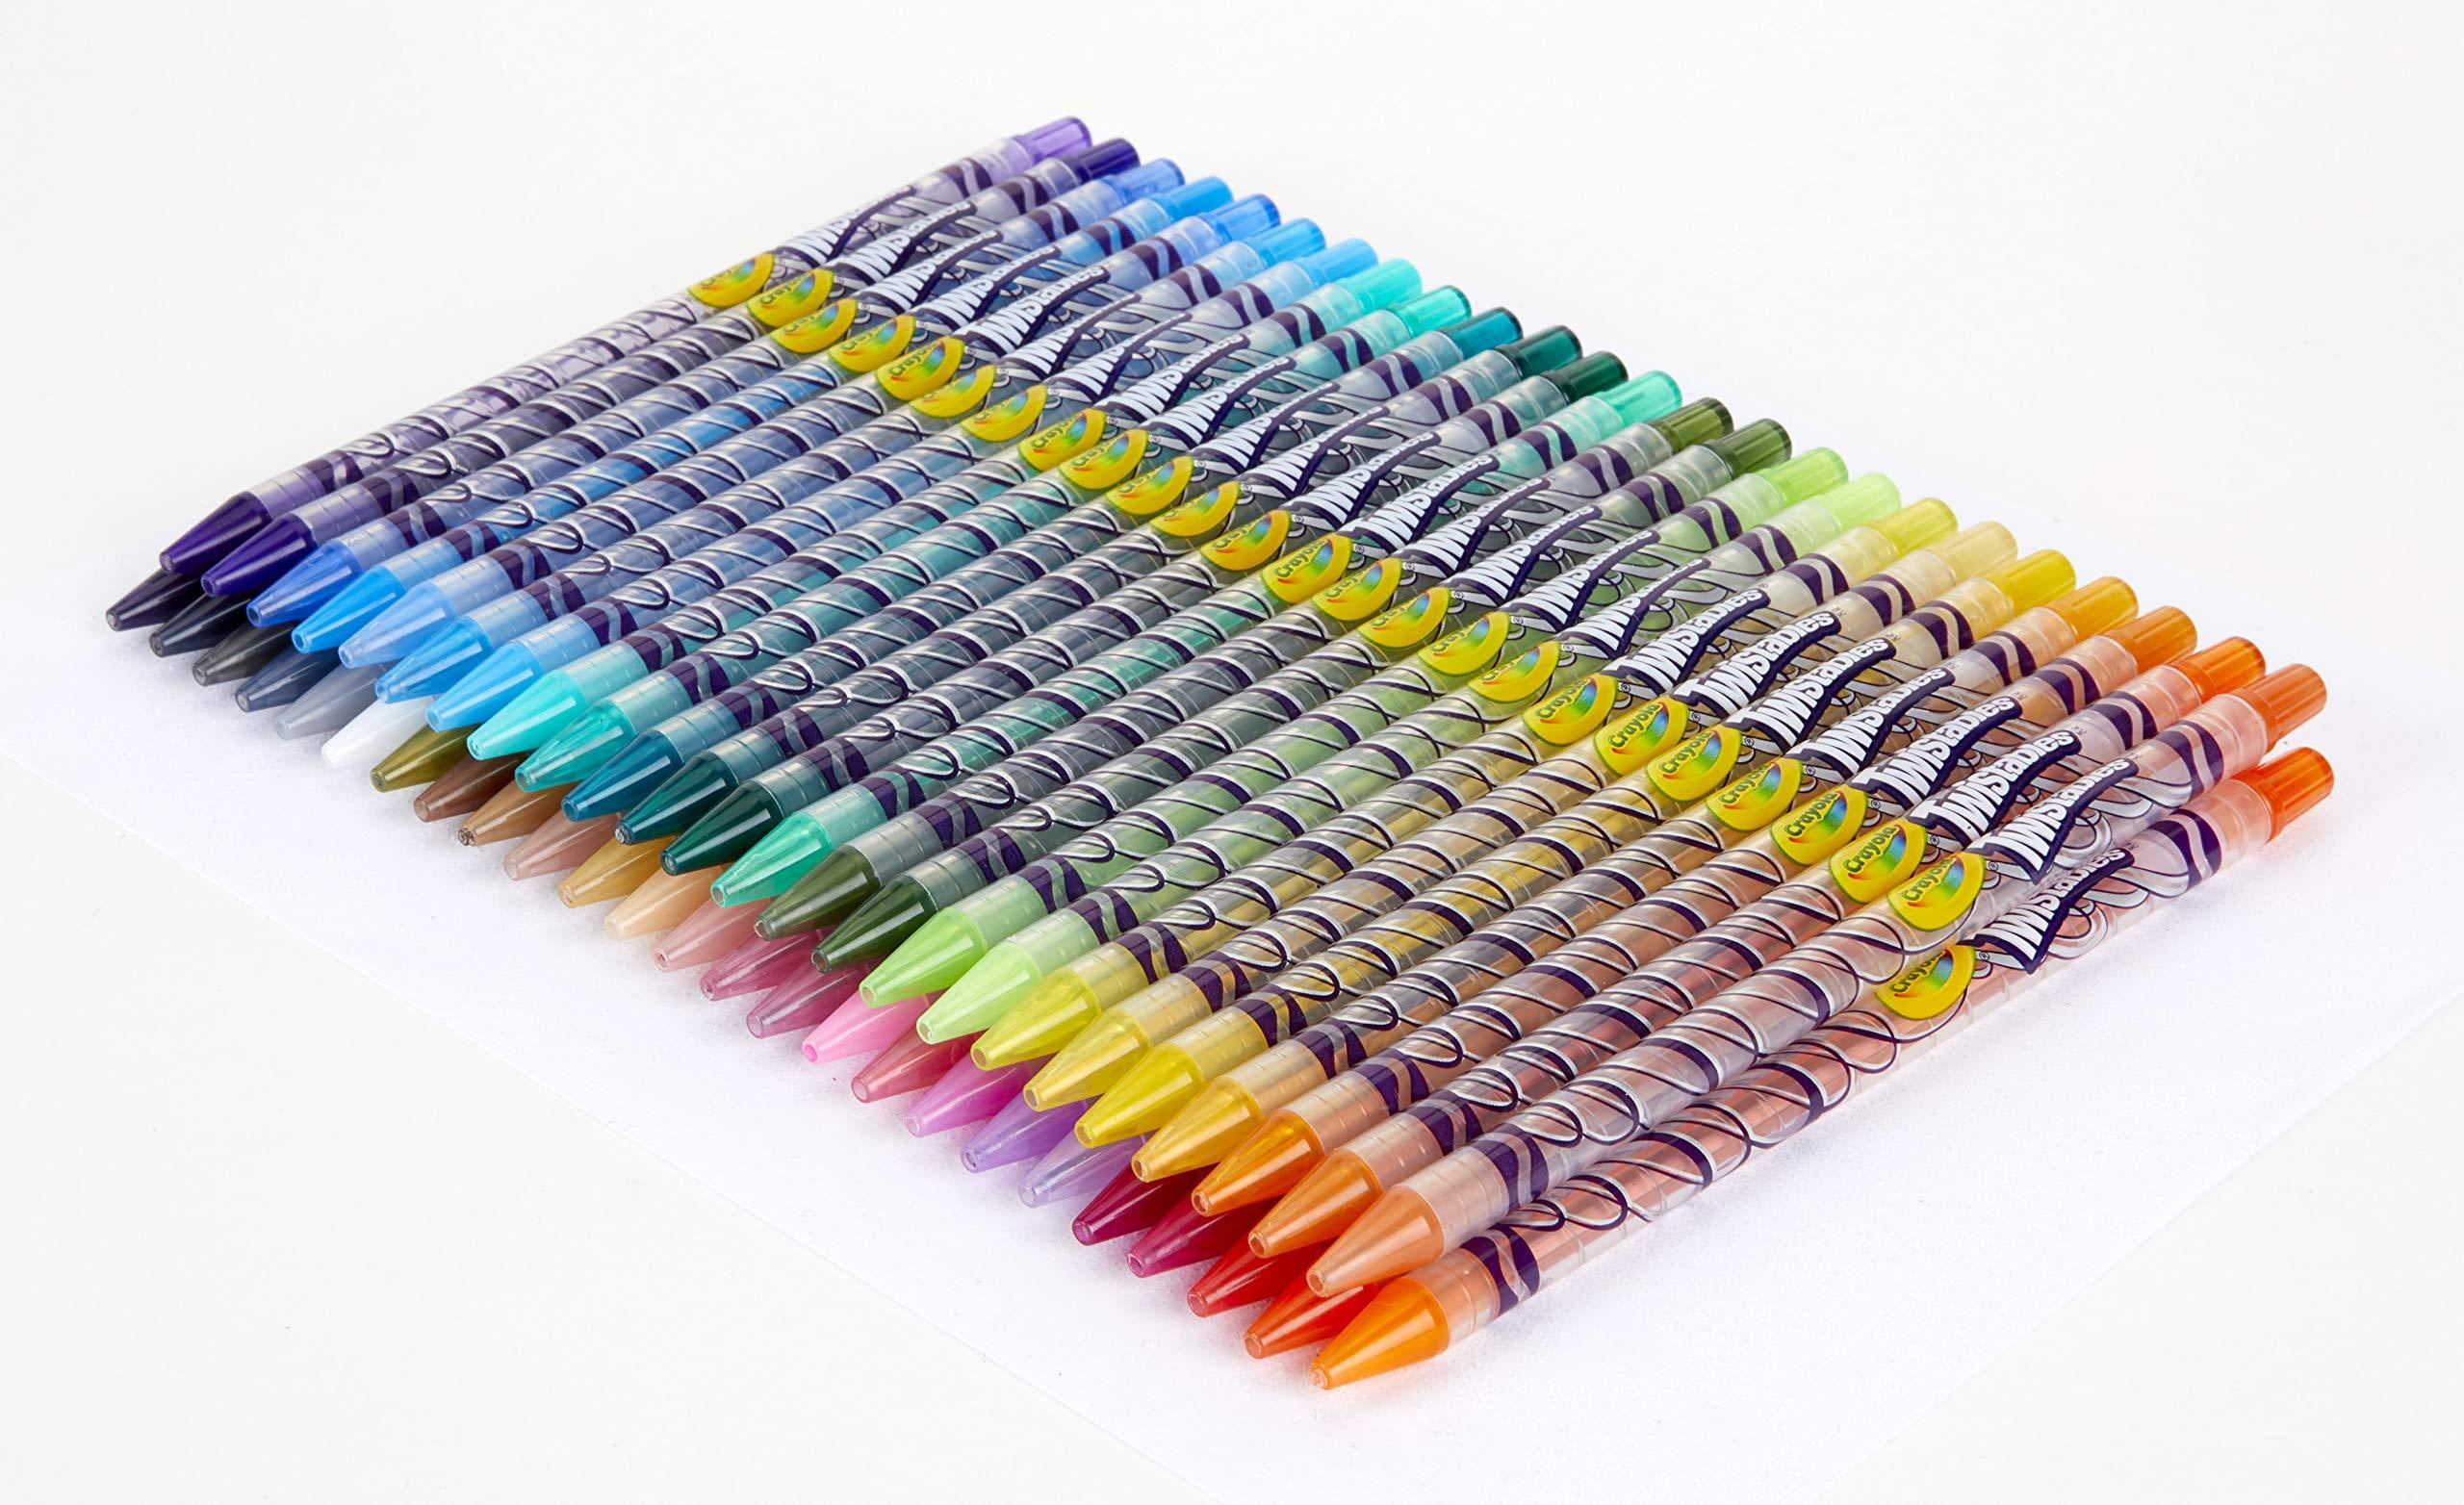 Crayola Twistables Colored Pencils - CYO687418 